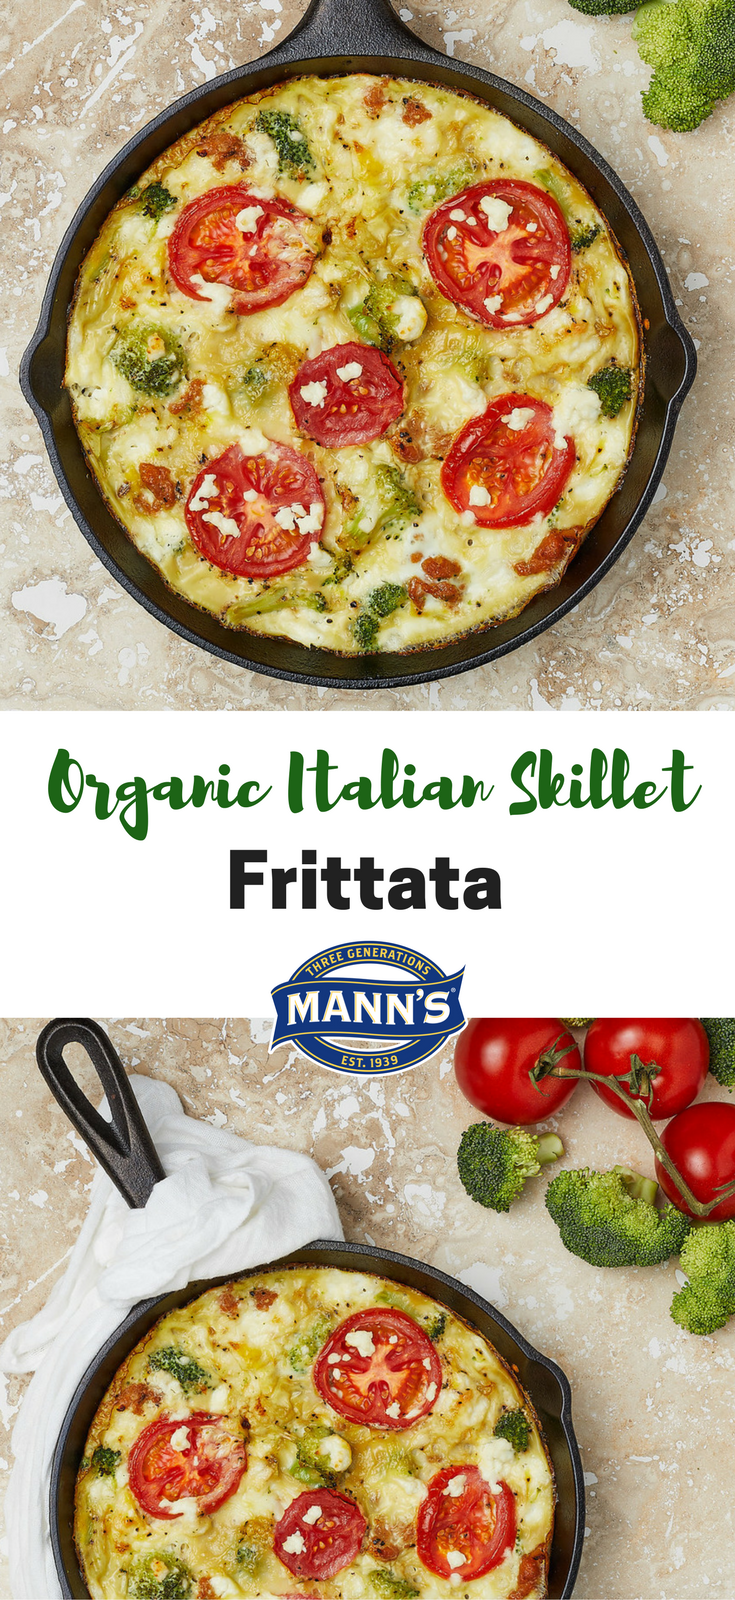 Organic Italian Skillet Frittata - Mann's Fresh Vegetables